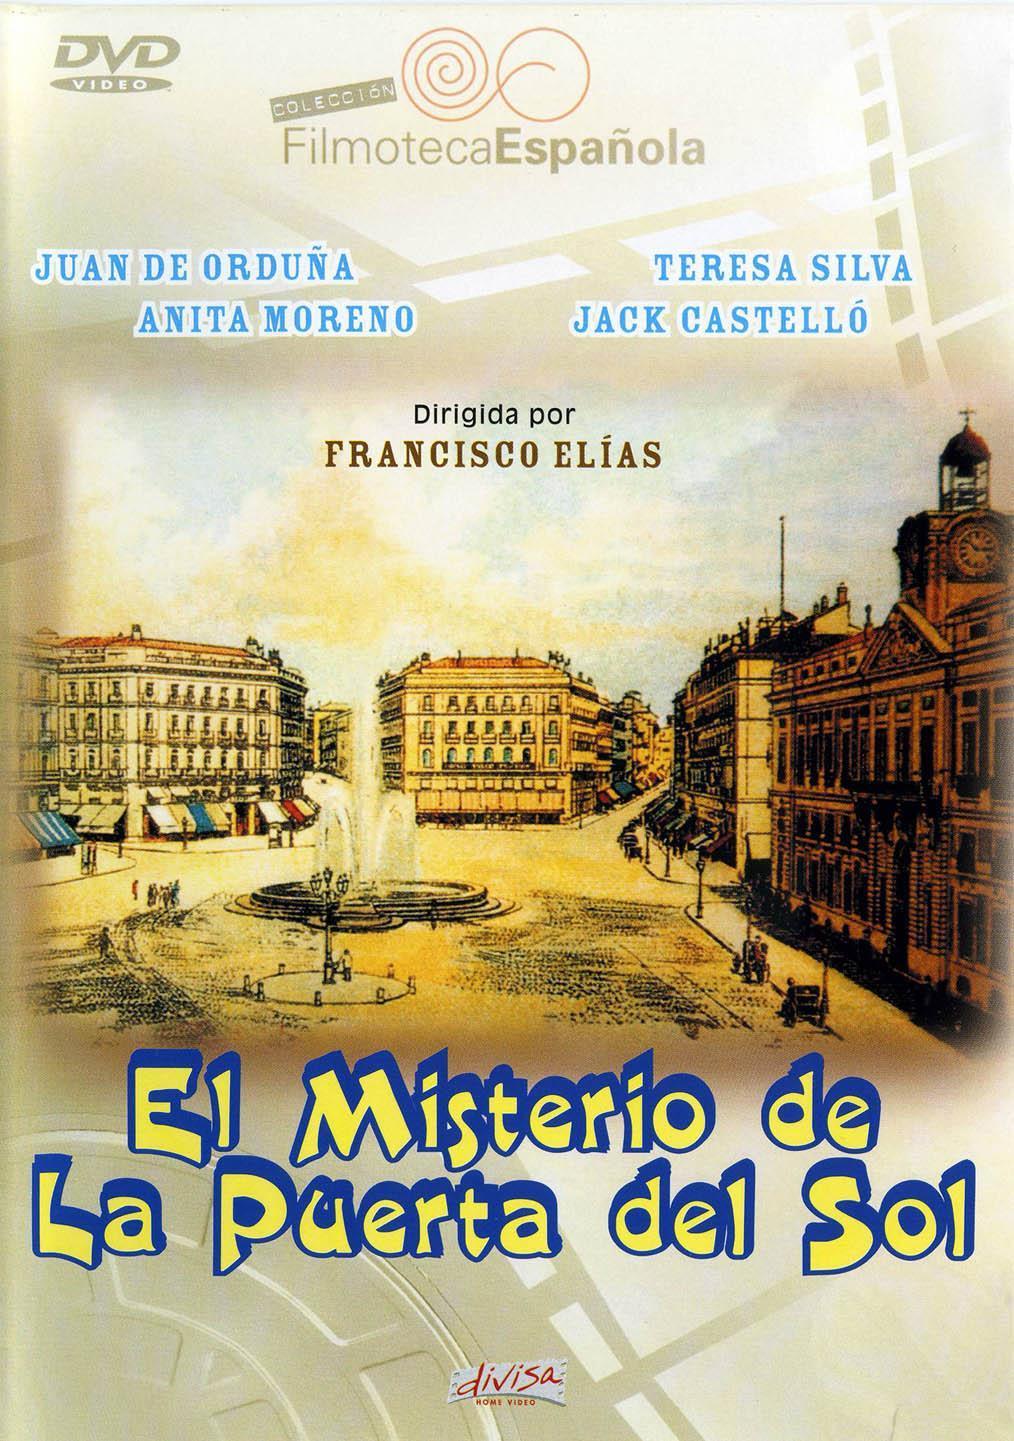 Постер фильма misterio de la Puerta del Sol